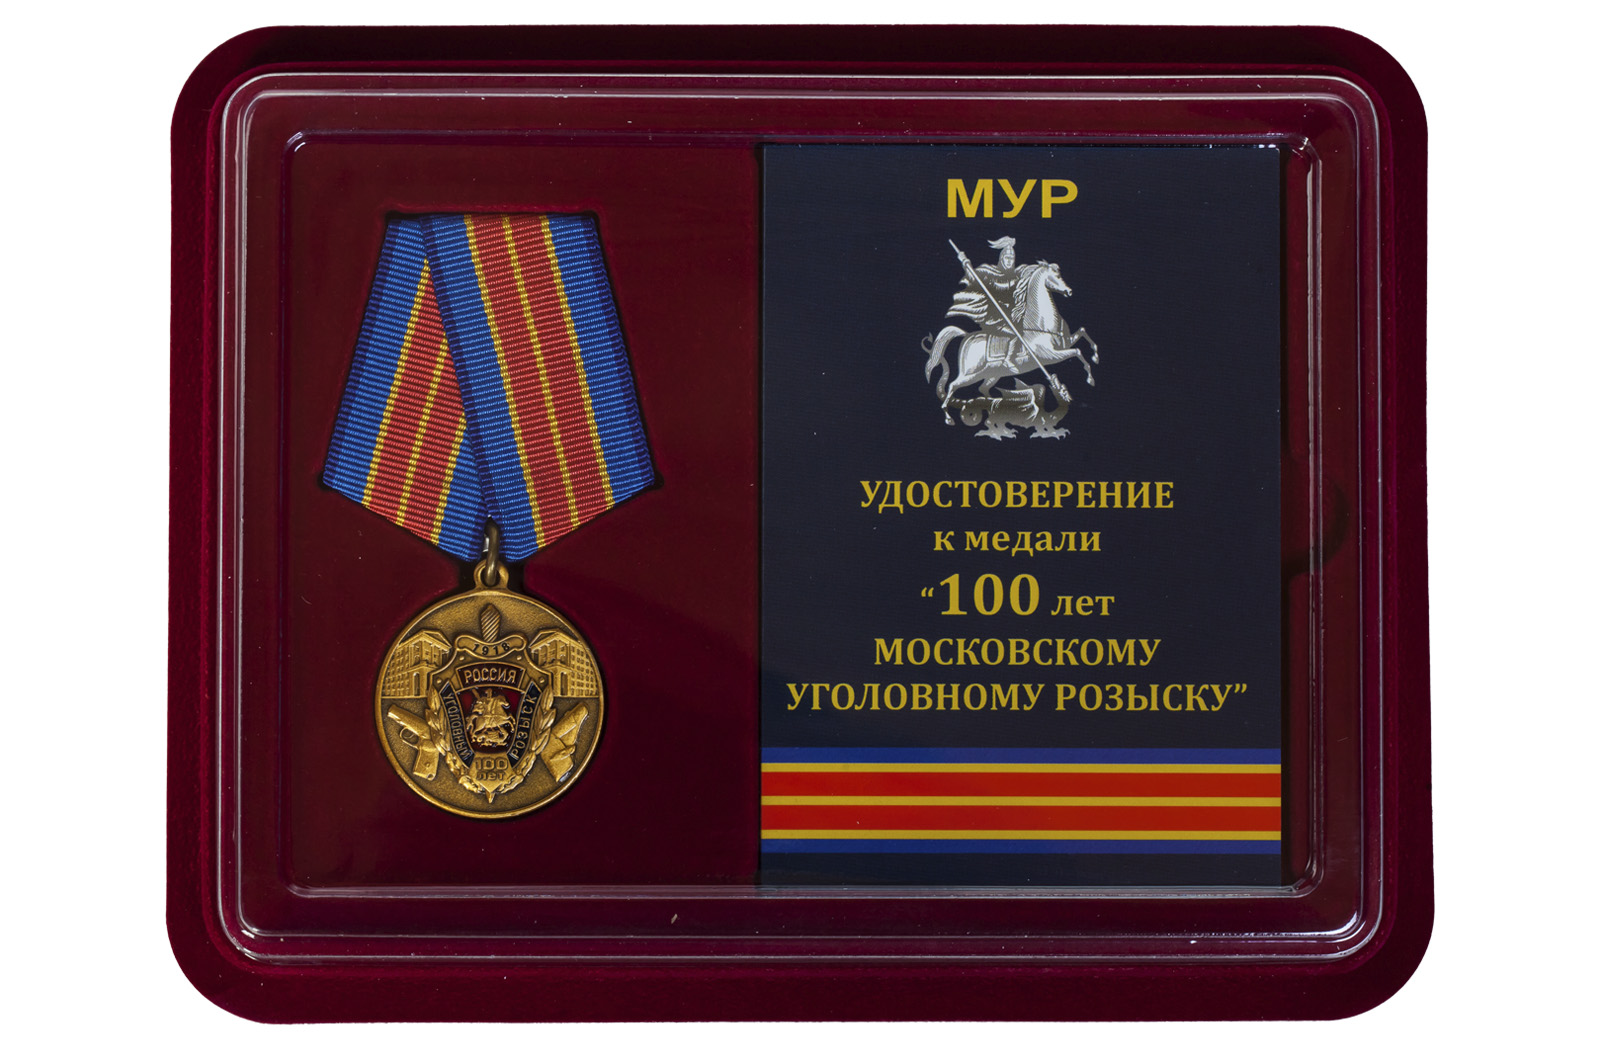 Купить юбилейную медаль 100 лет Московскому Уголовному розыску МВД России онлайн